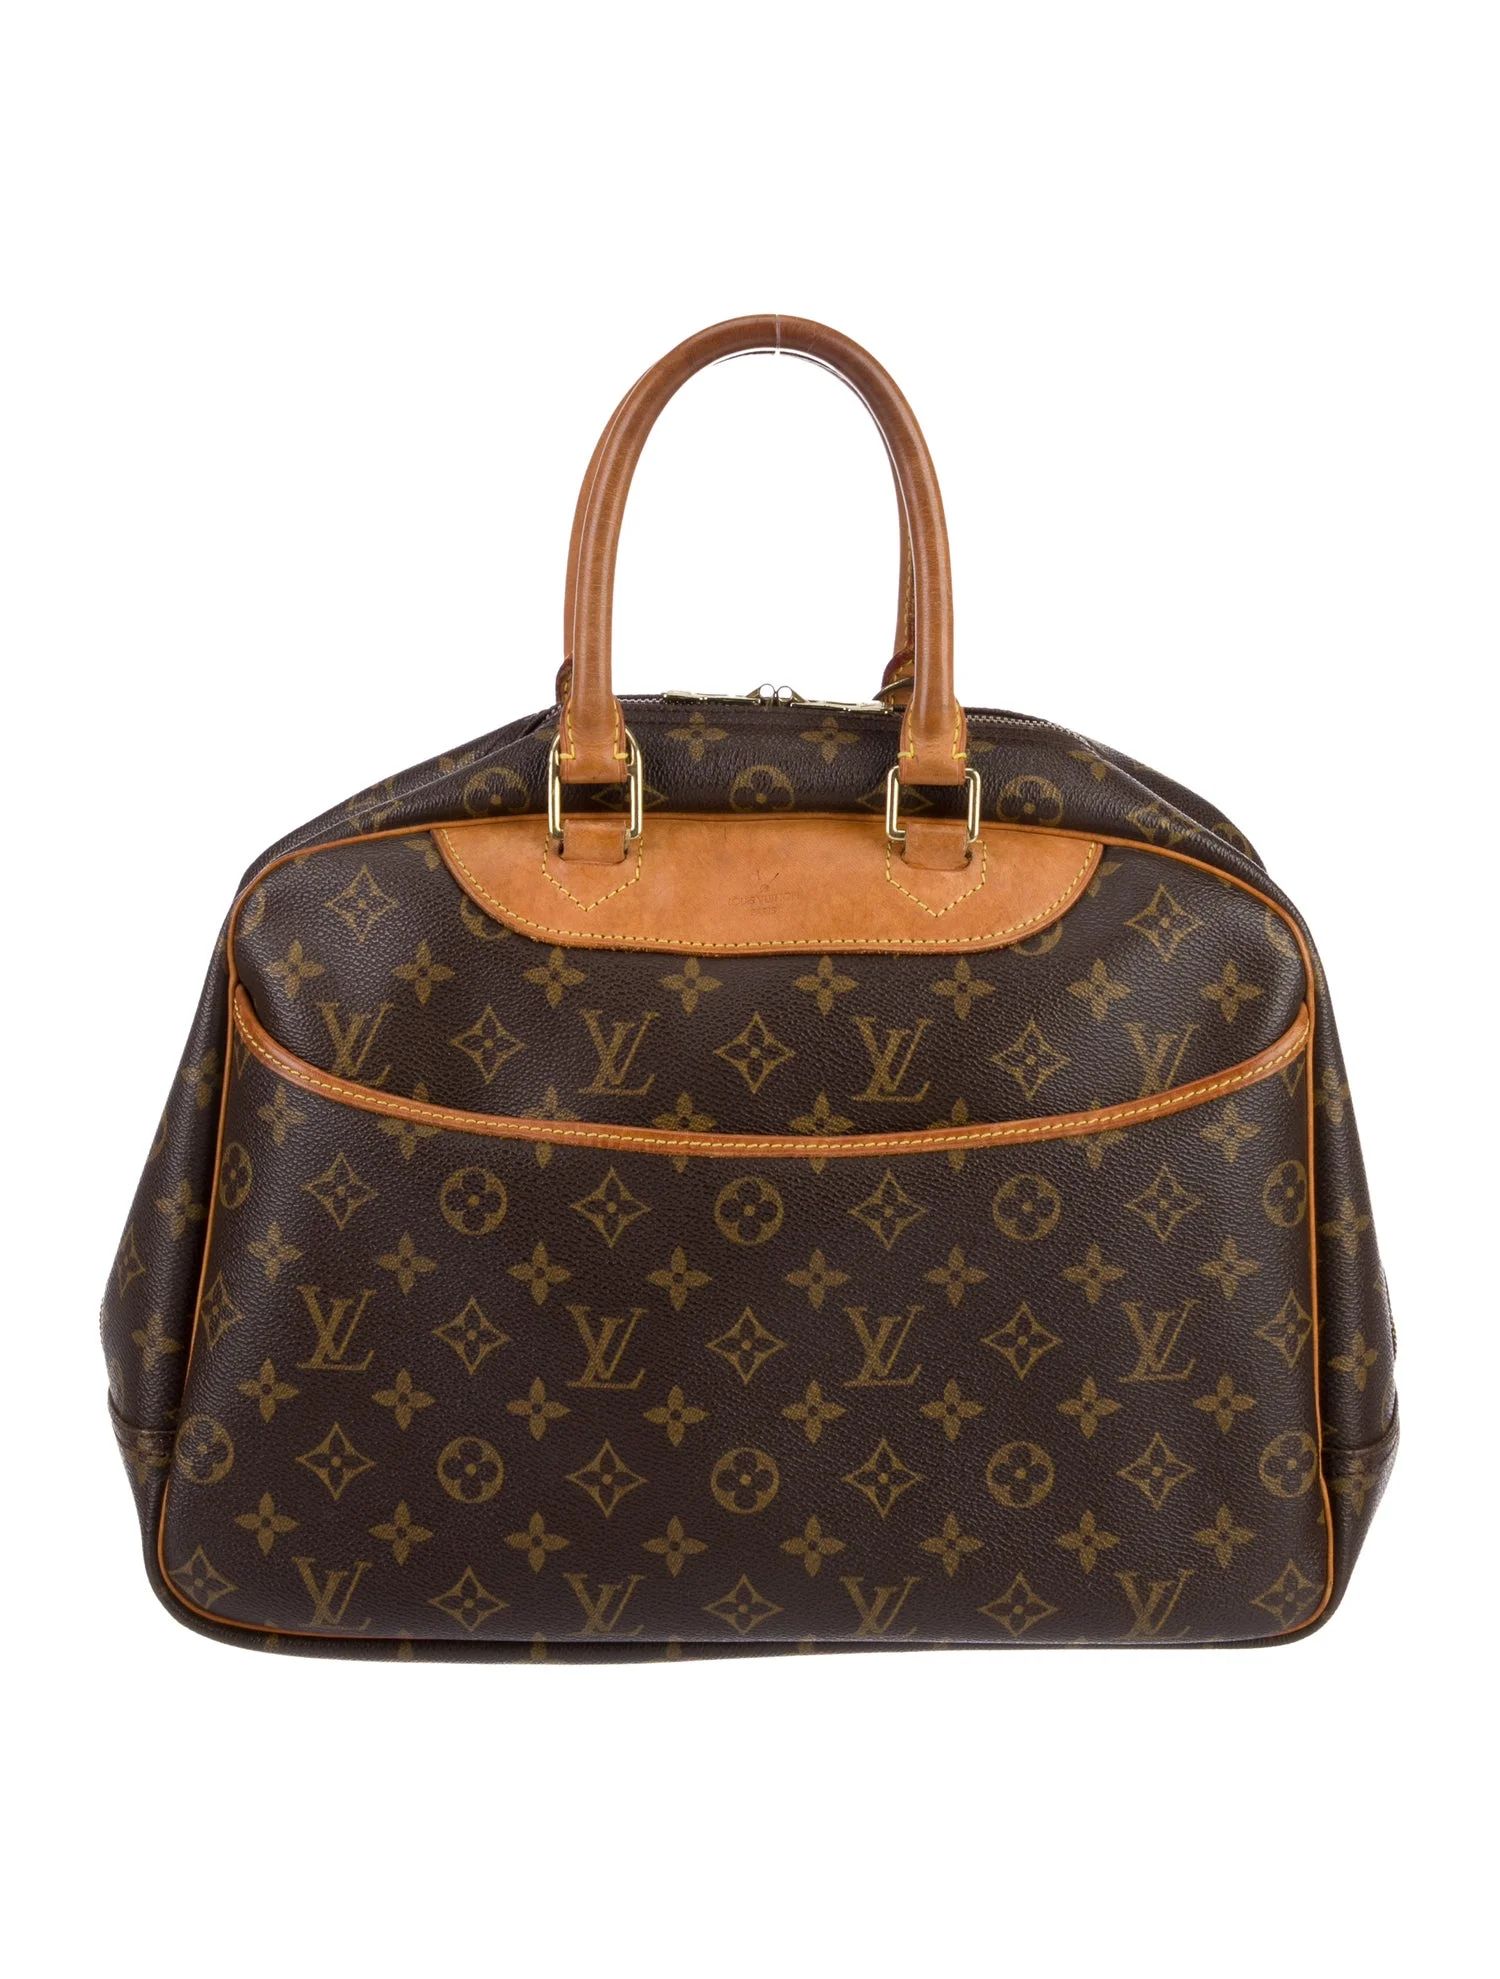 Louis Vuitton Top Handle Bag | The RealReal